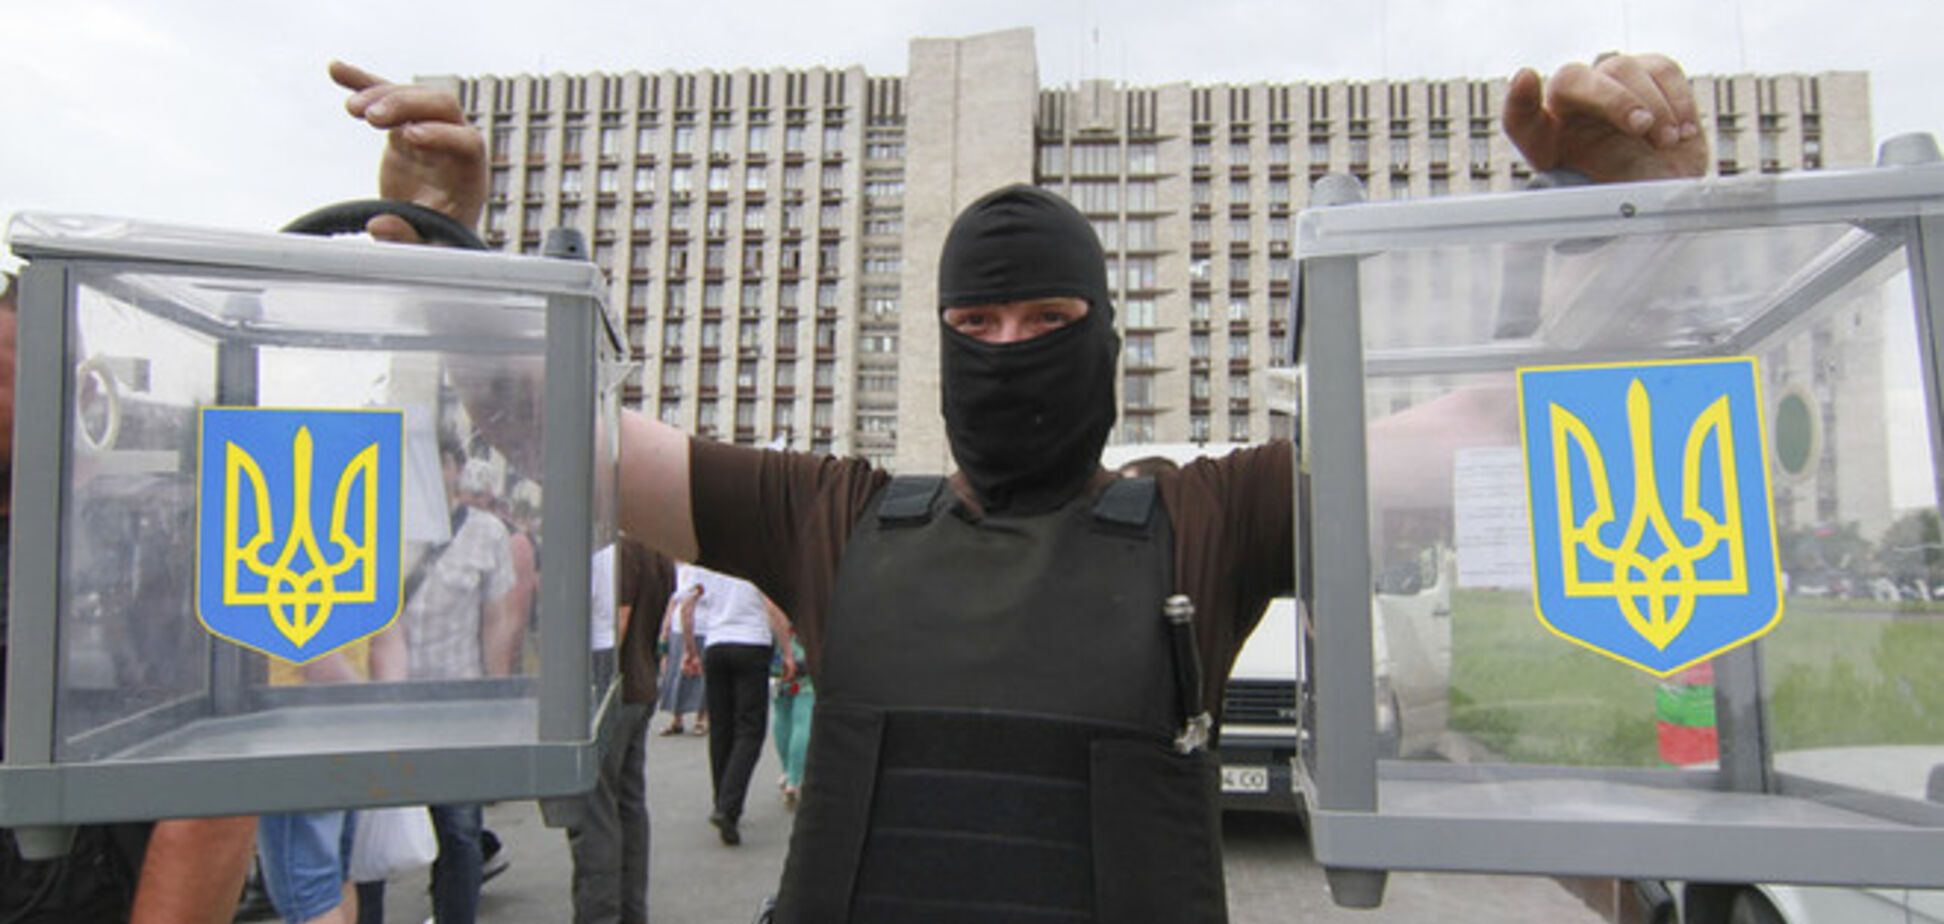 Перед выборами в Донецкой области усилилось вооруженное противостояние - СМИ